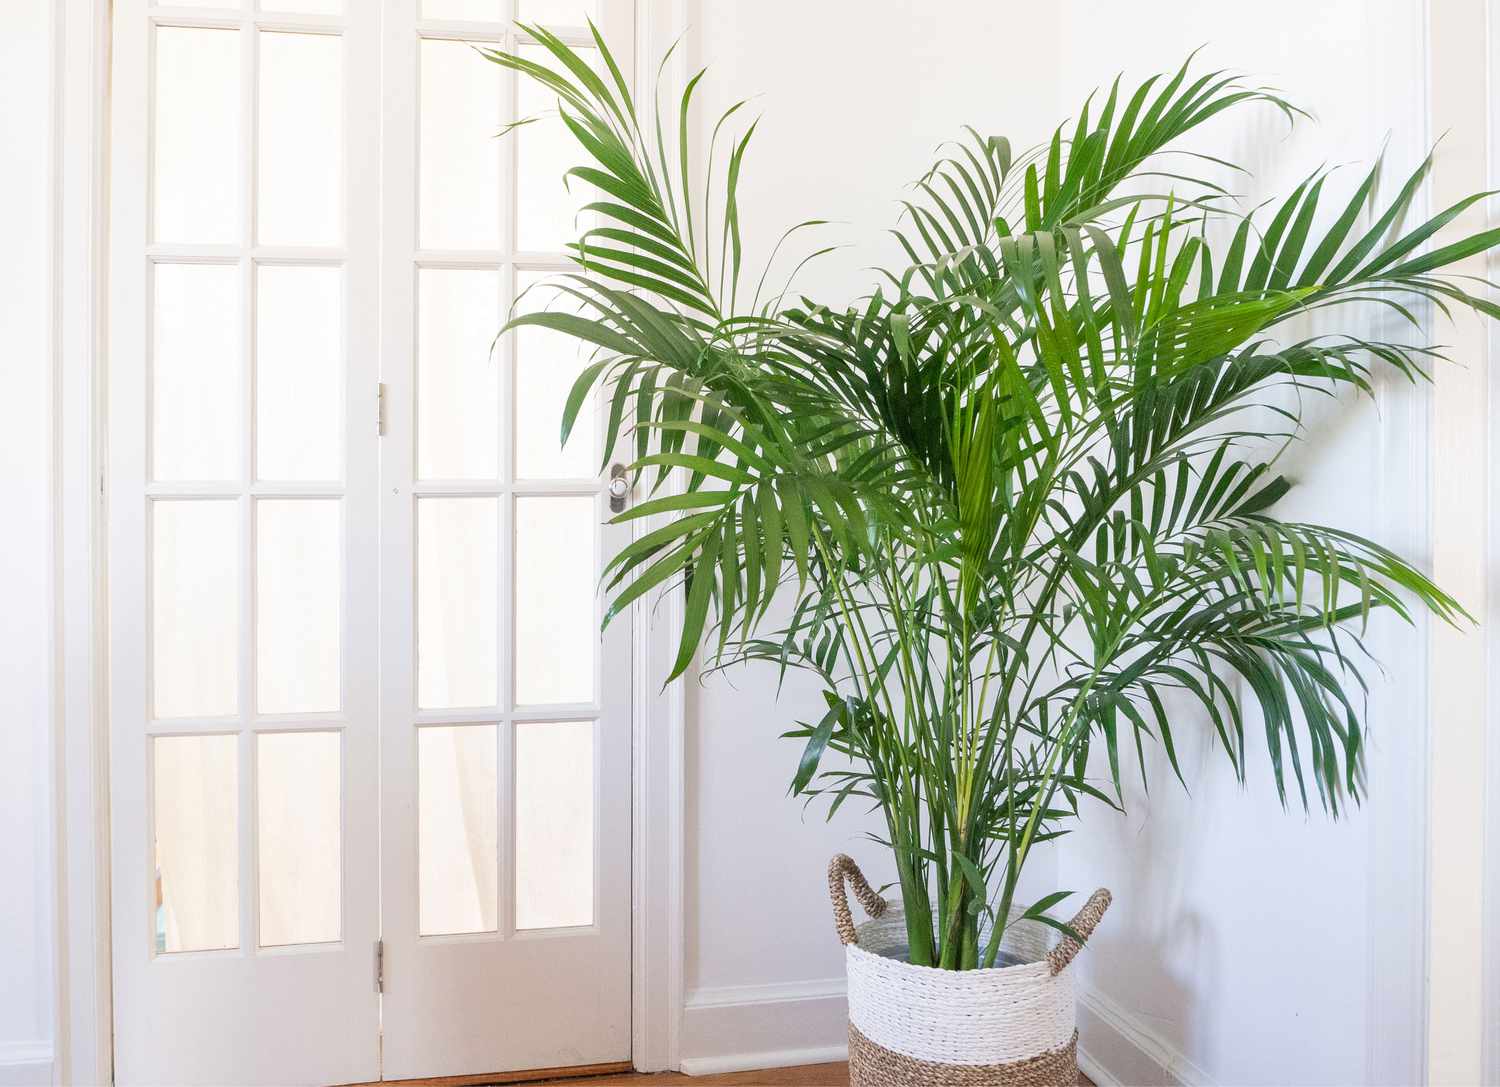 How to grow a palm tree